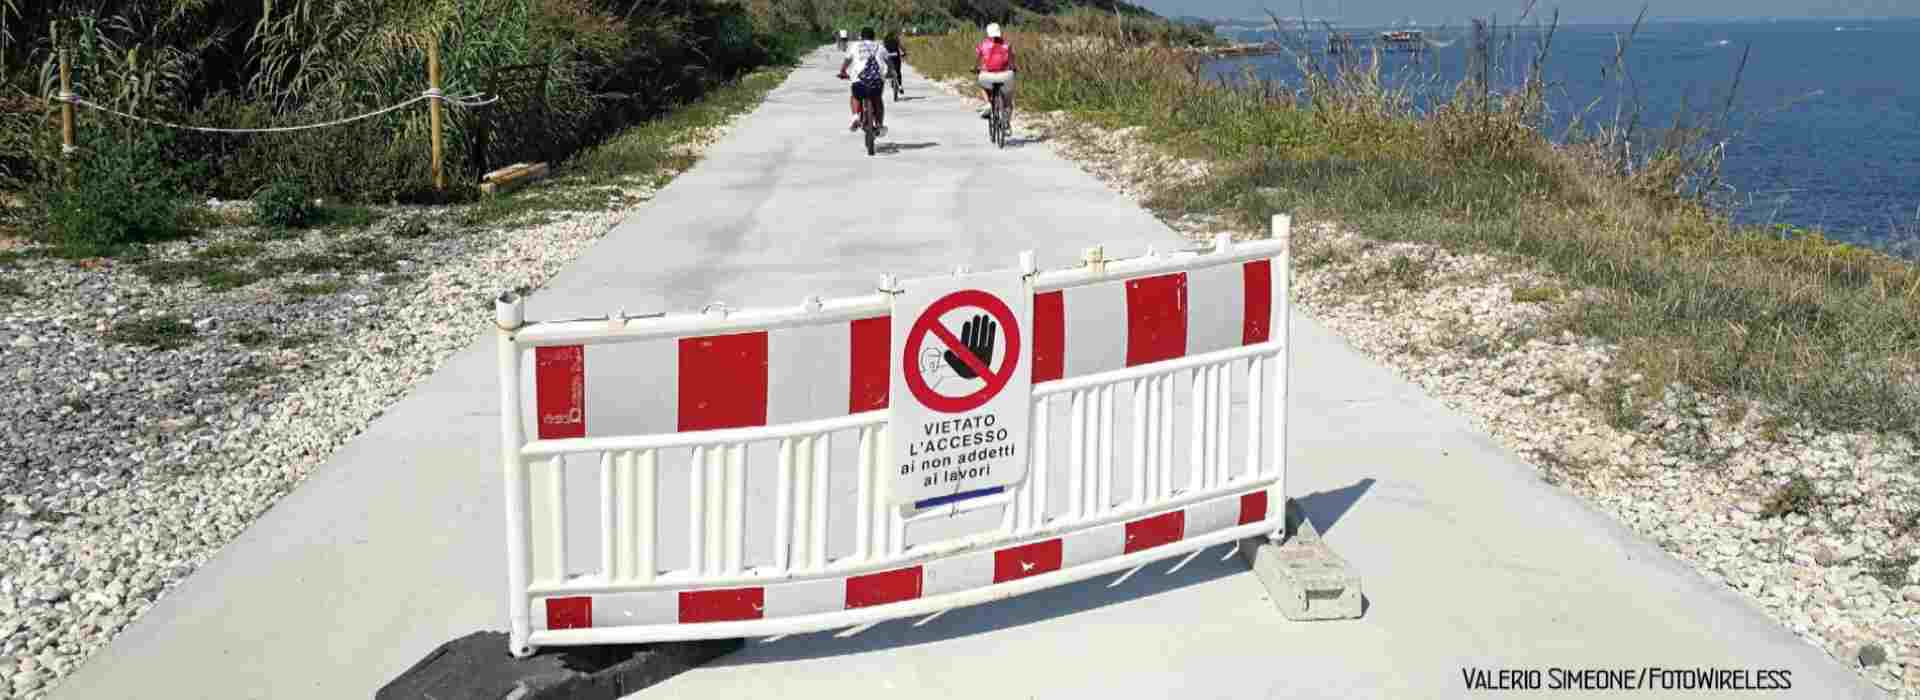 Abruzzo, la pista ciclopedonale da 50 milioni di euro mai finita